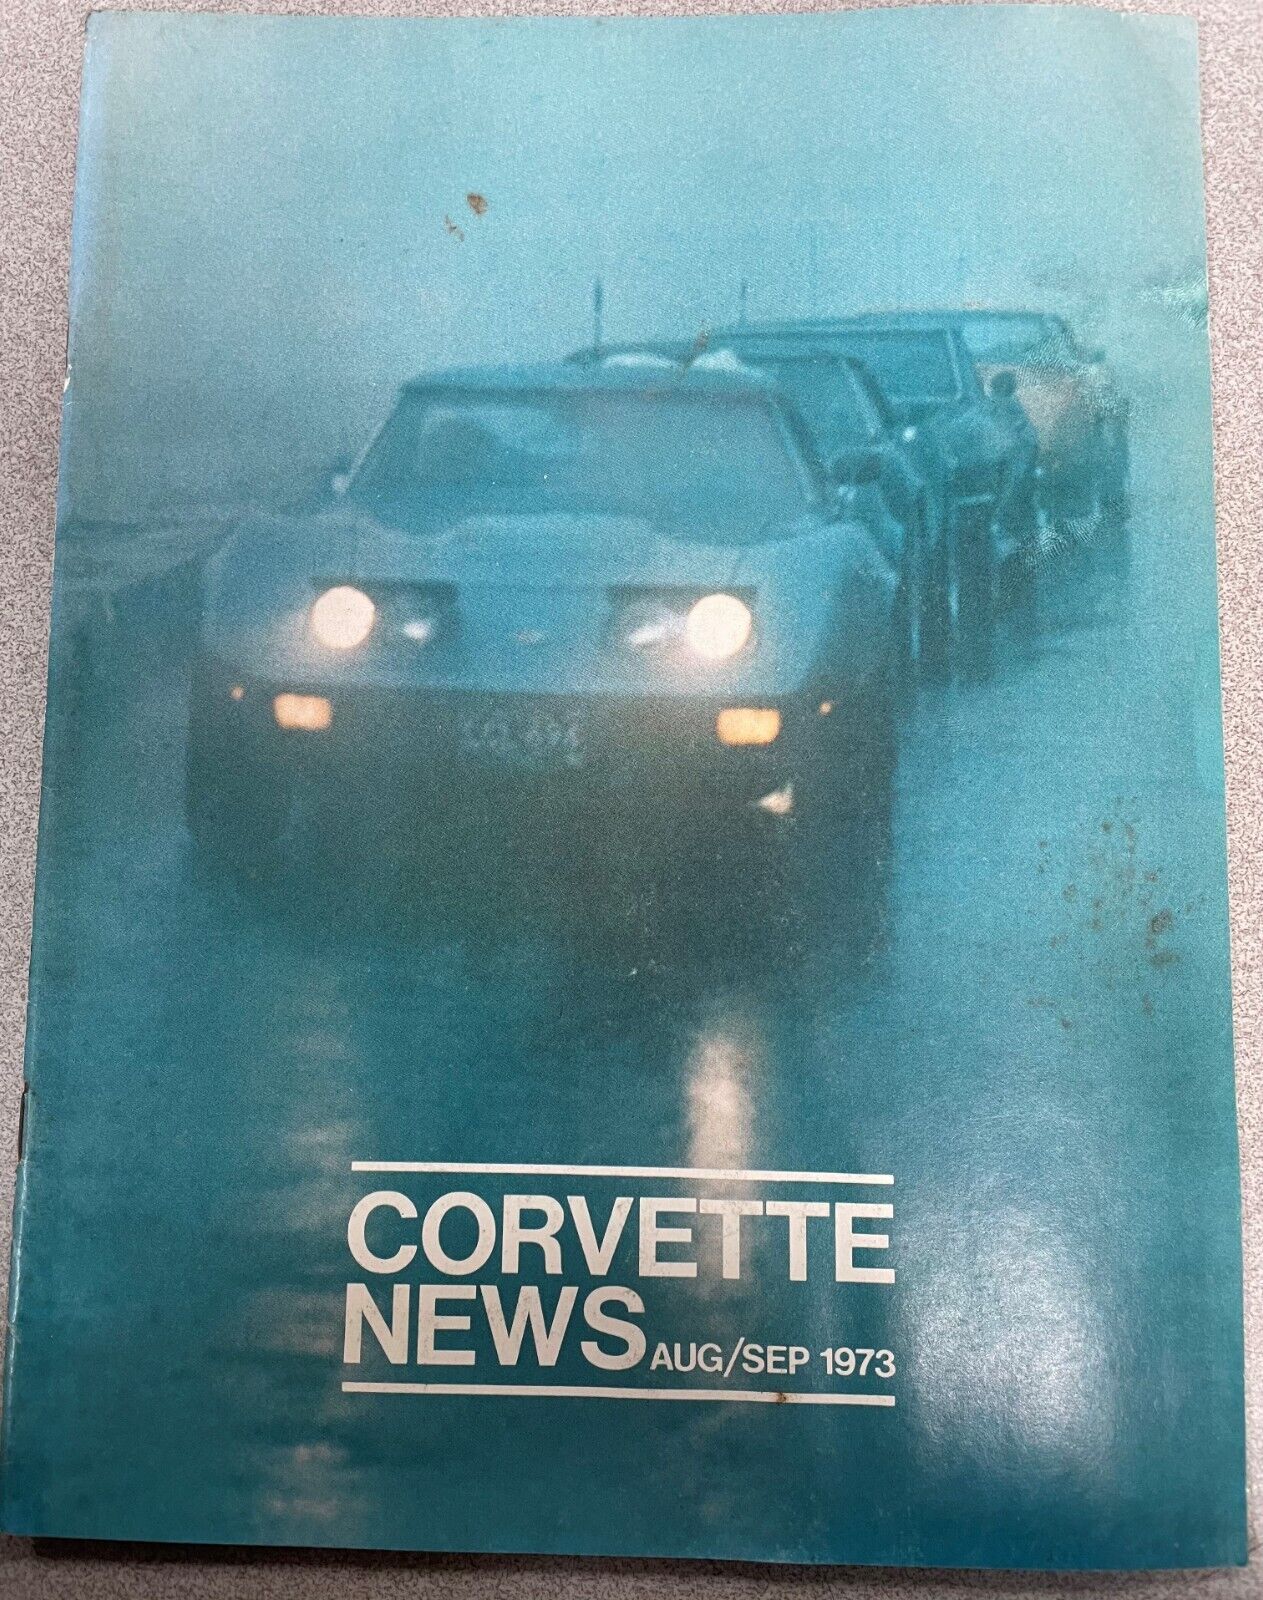 Vintage Corvette News Magazine - August/September 1973